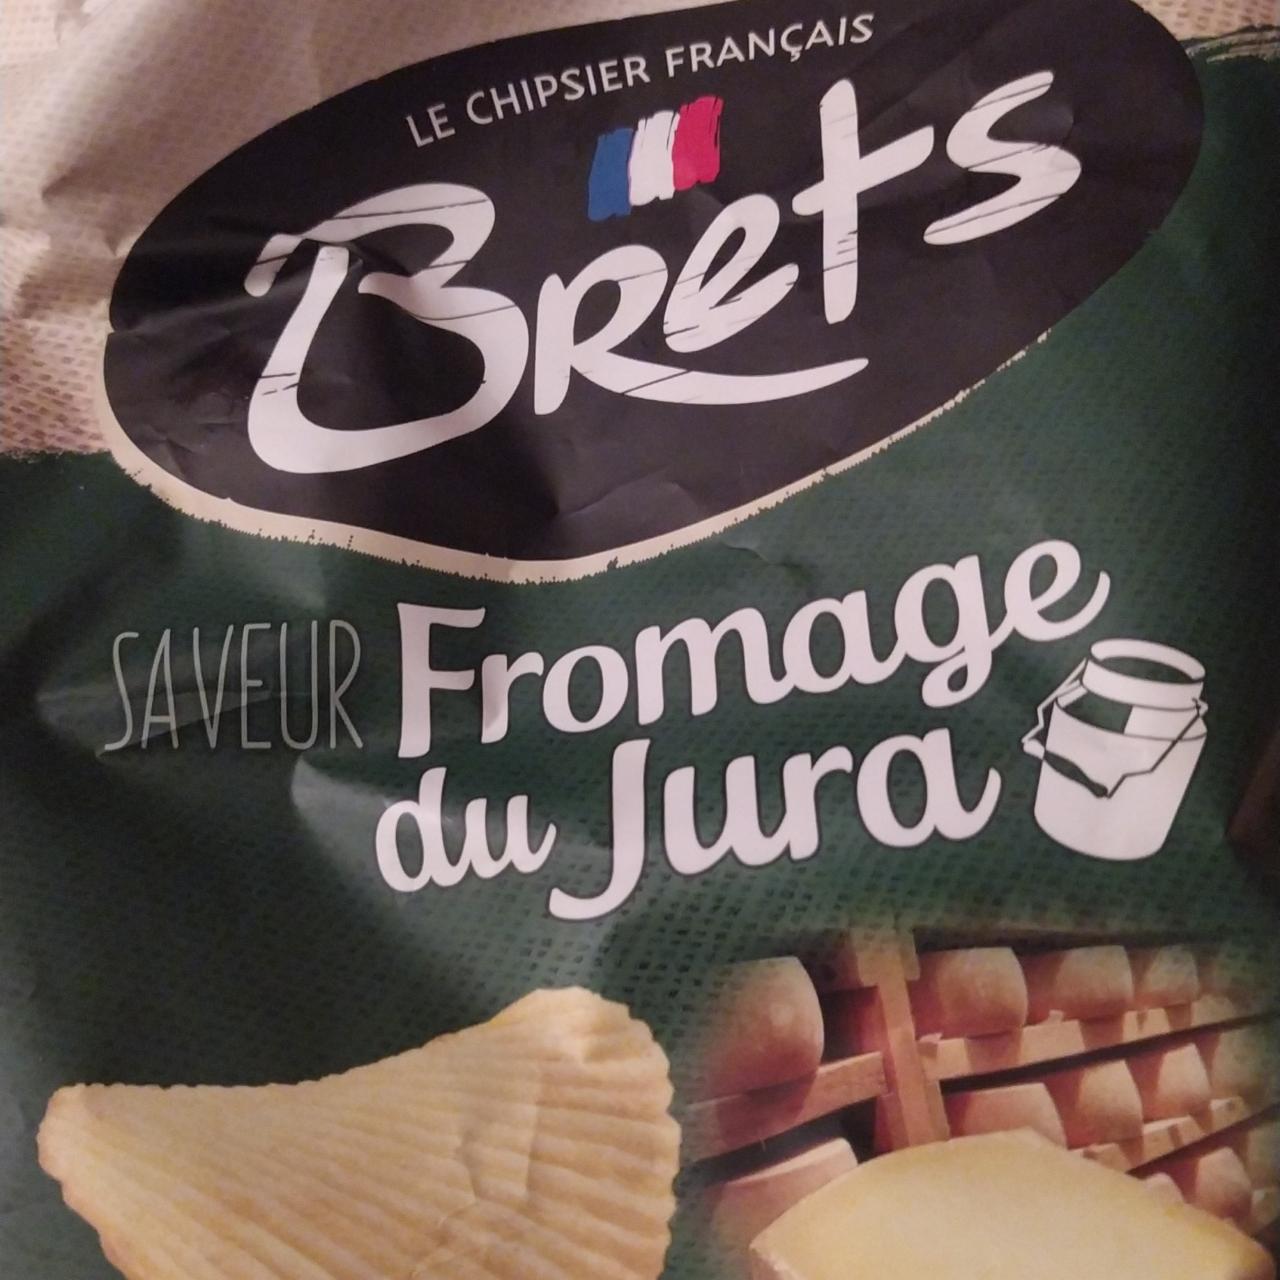 Фото - Чипсы со вкусом сыра Formage Du Jura Brets